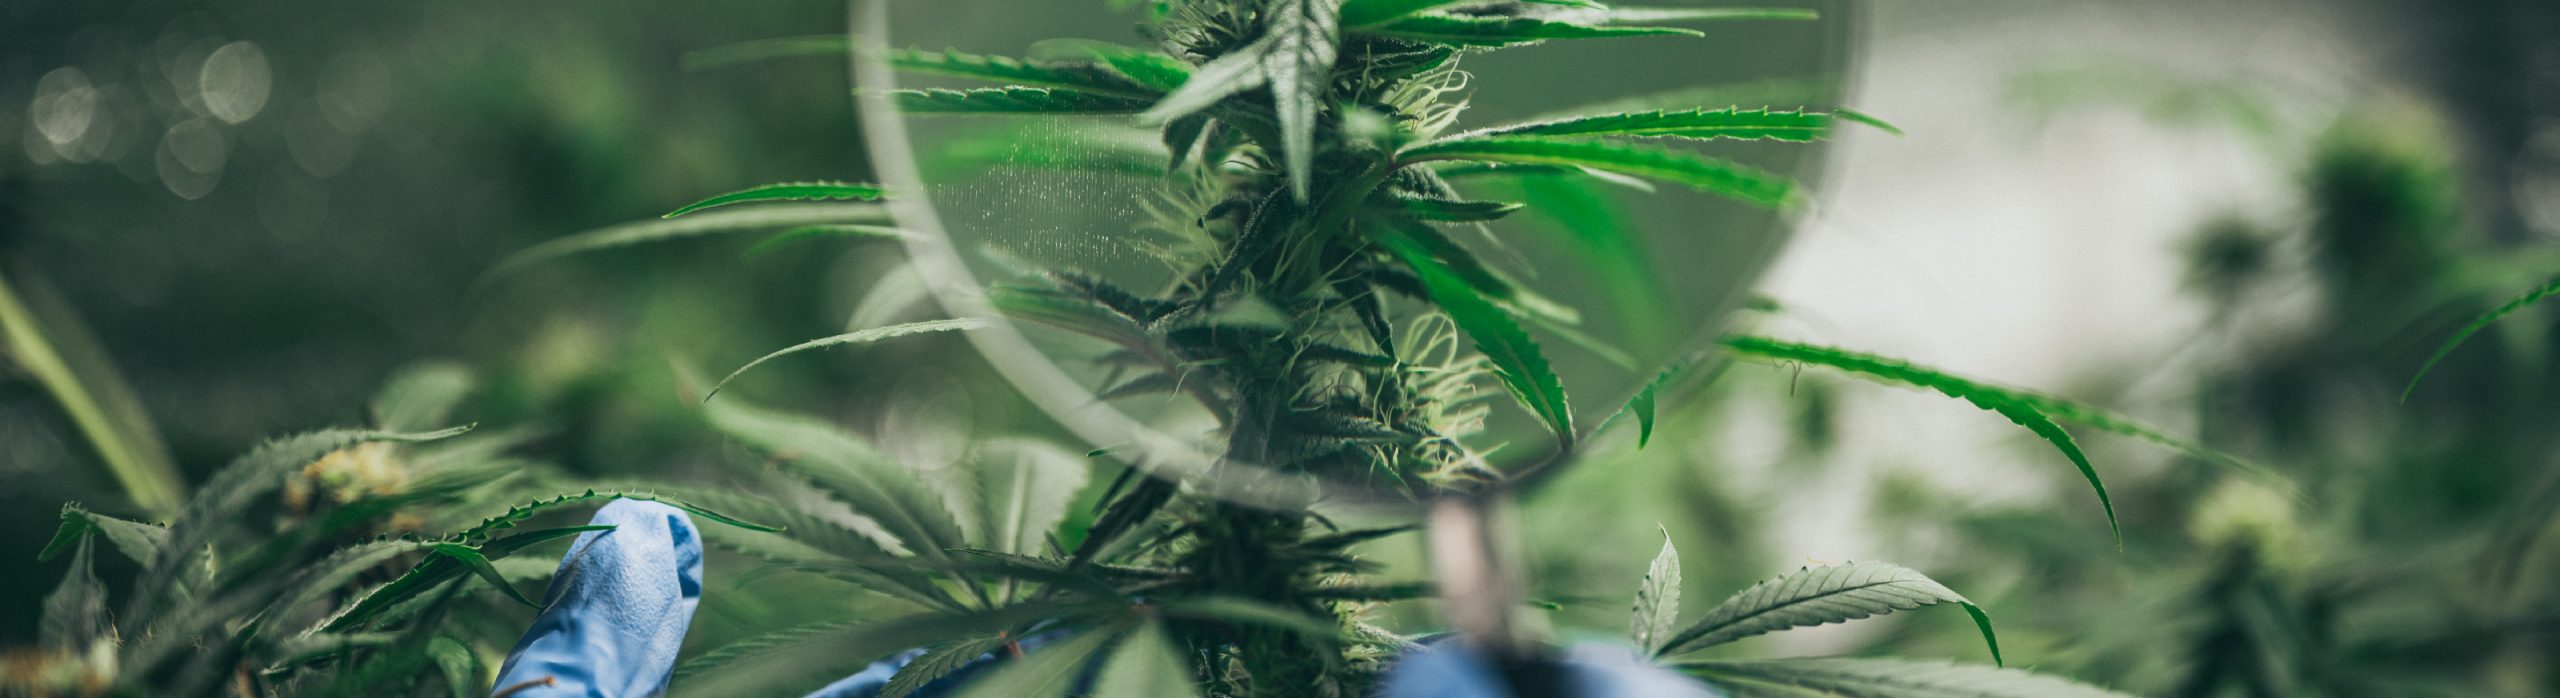 I 3 principali metodi di coltivazione della Cannabis